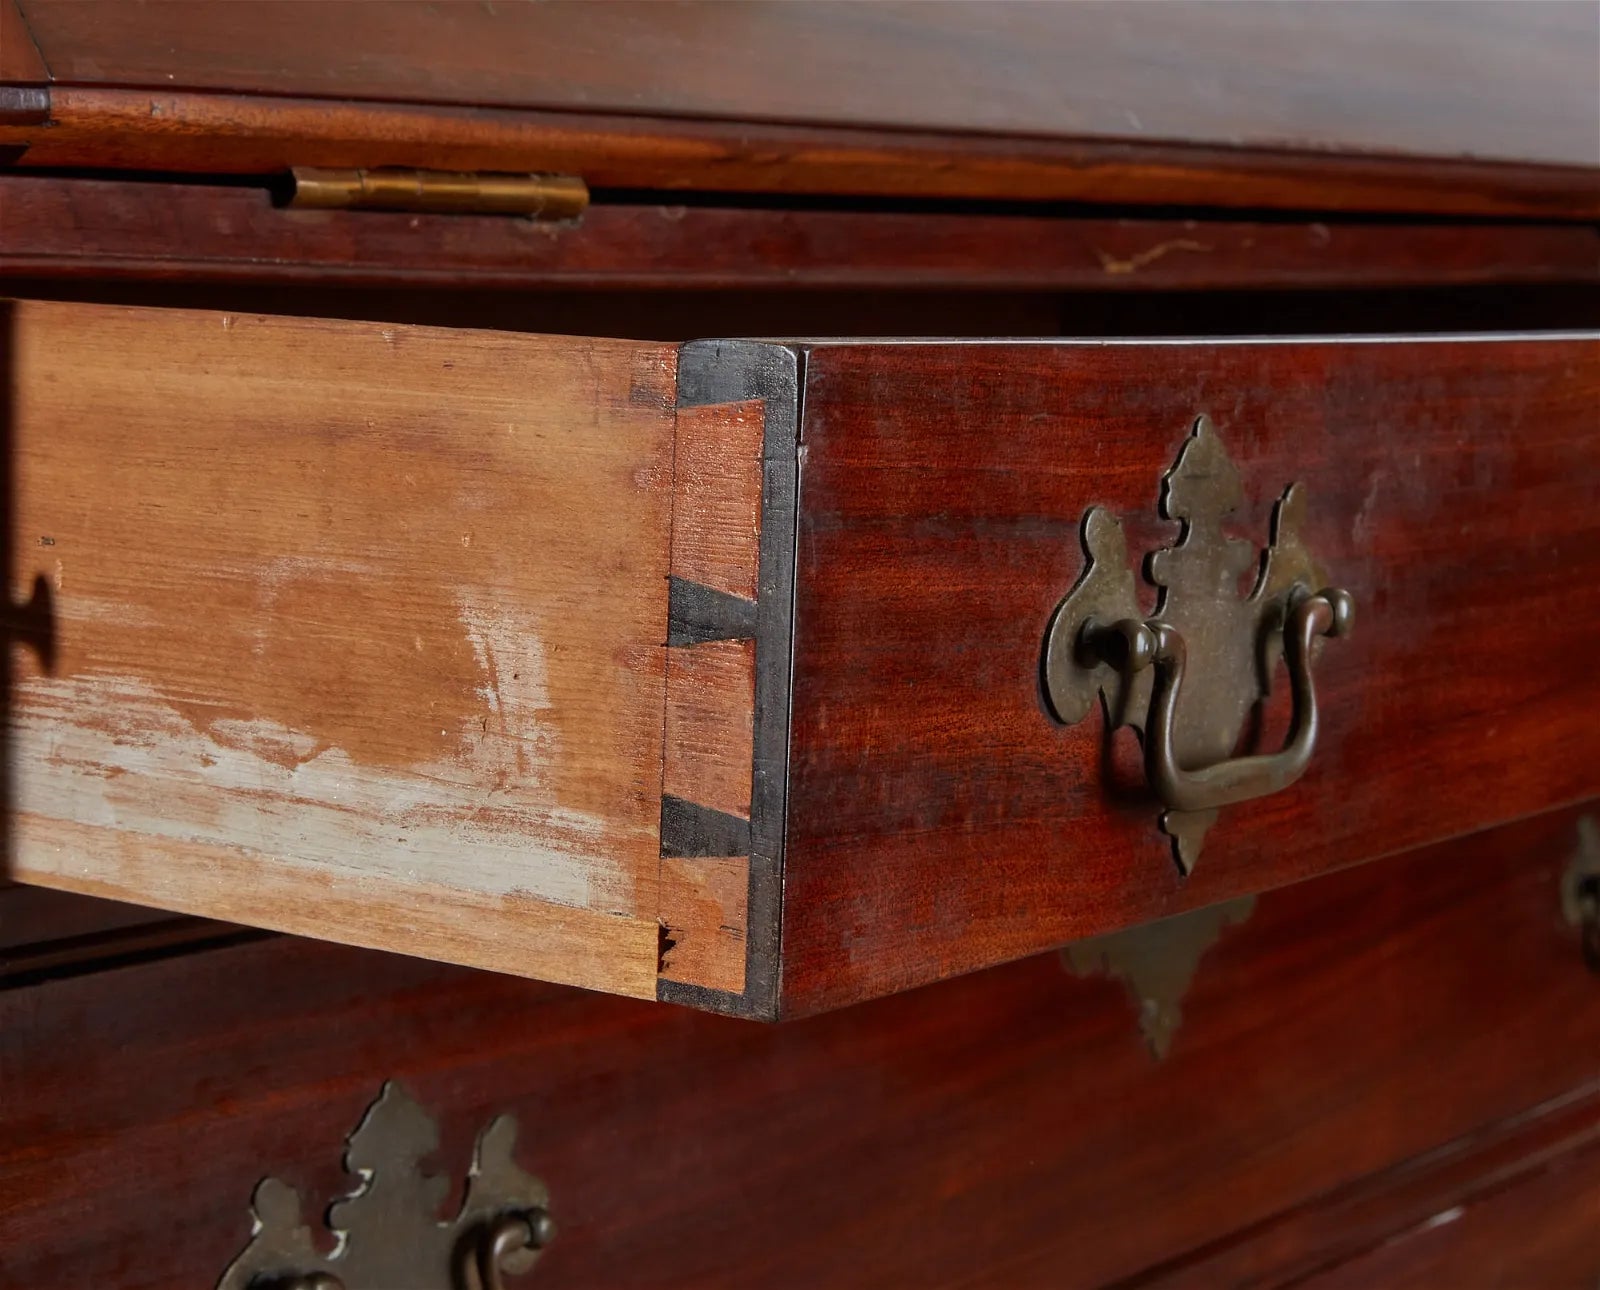 AF5-029: Antique Late 18th Century Chippendale Sabicu & Exotic Hardwood Slant Front Desk